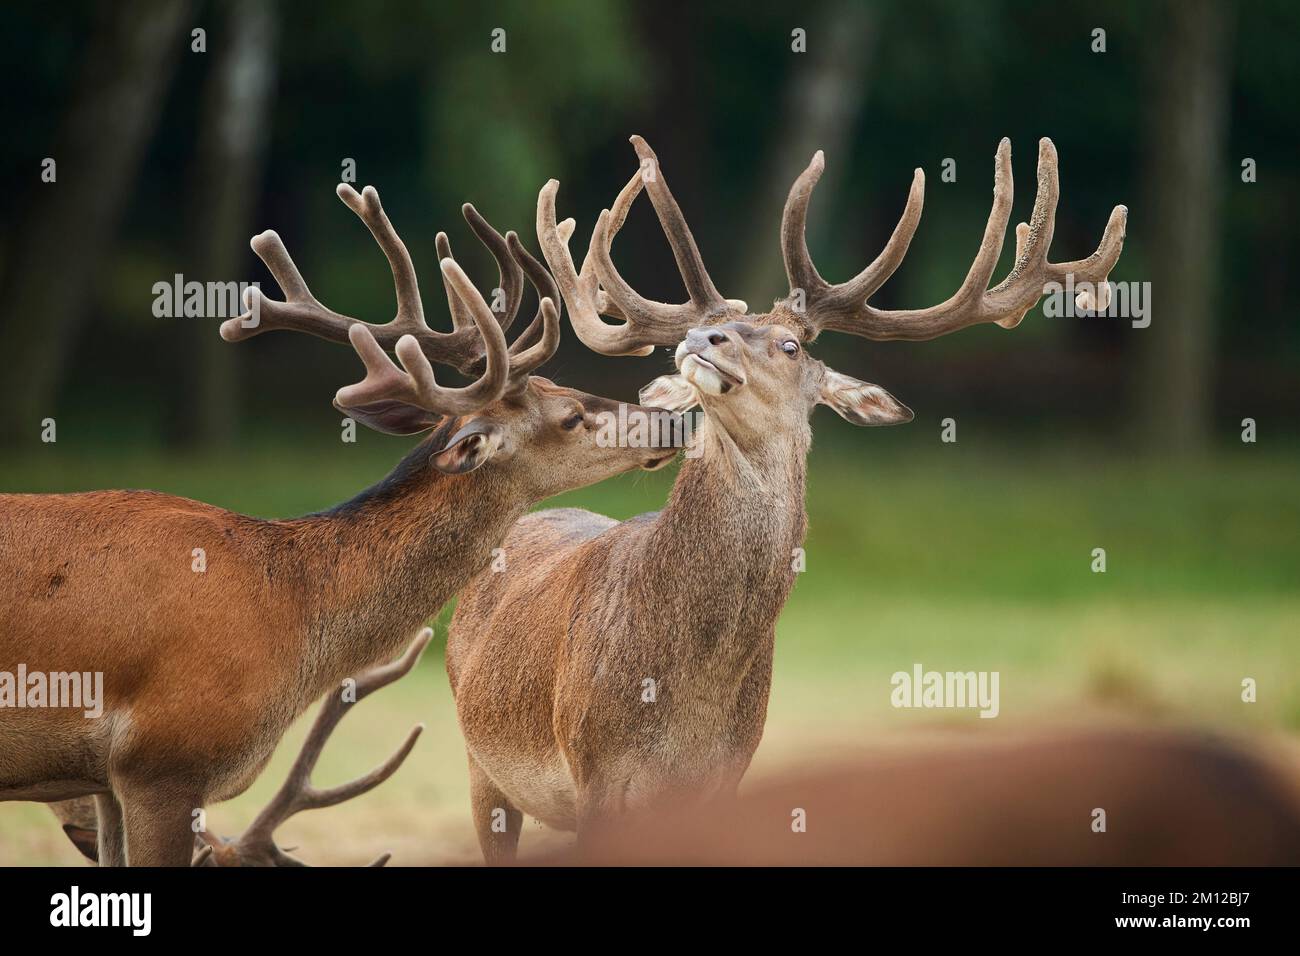 Red deer (Cervus elaphus), deer, meadow, clearing, standing, view camera Stock Photo